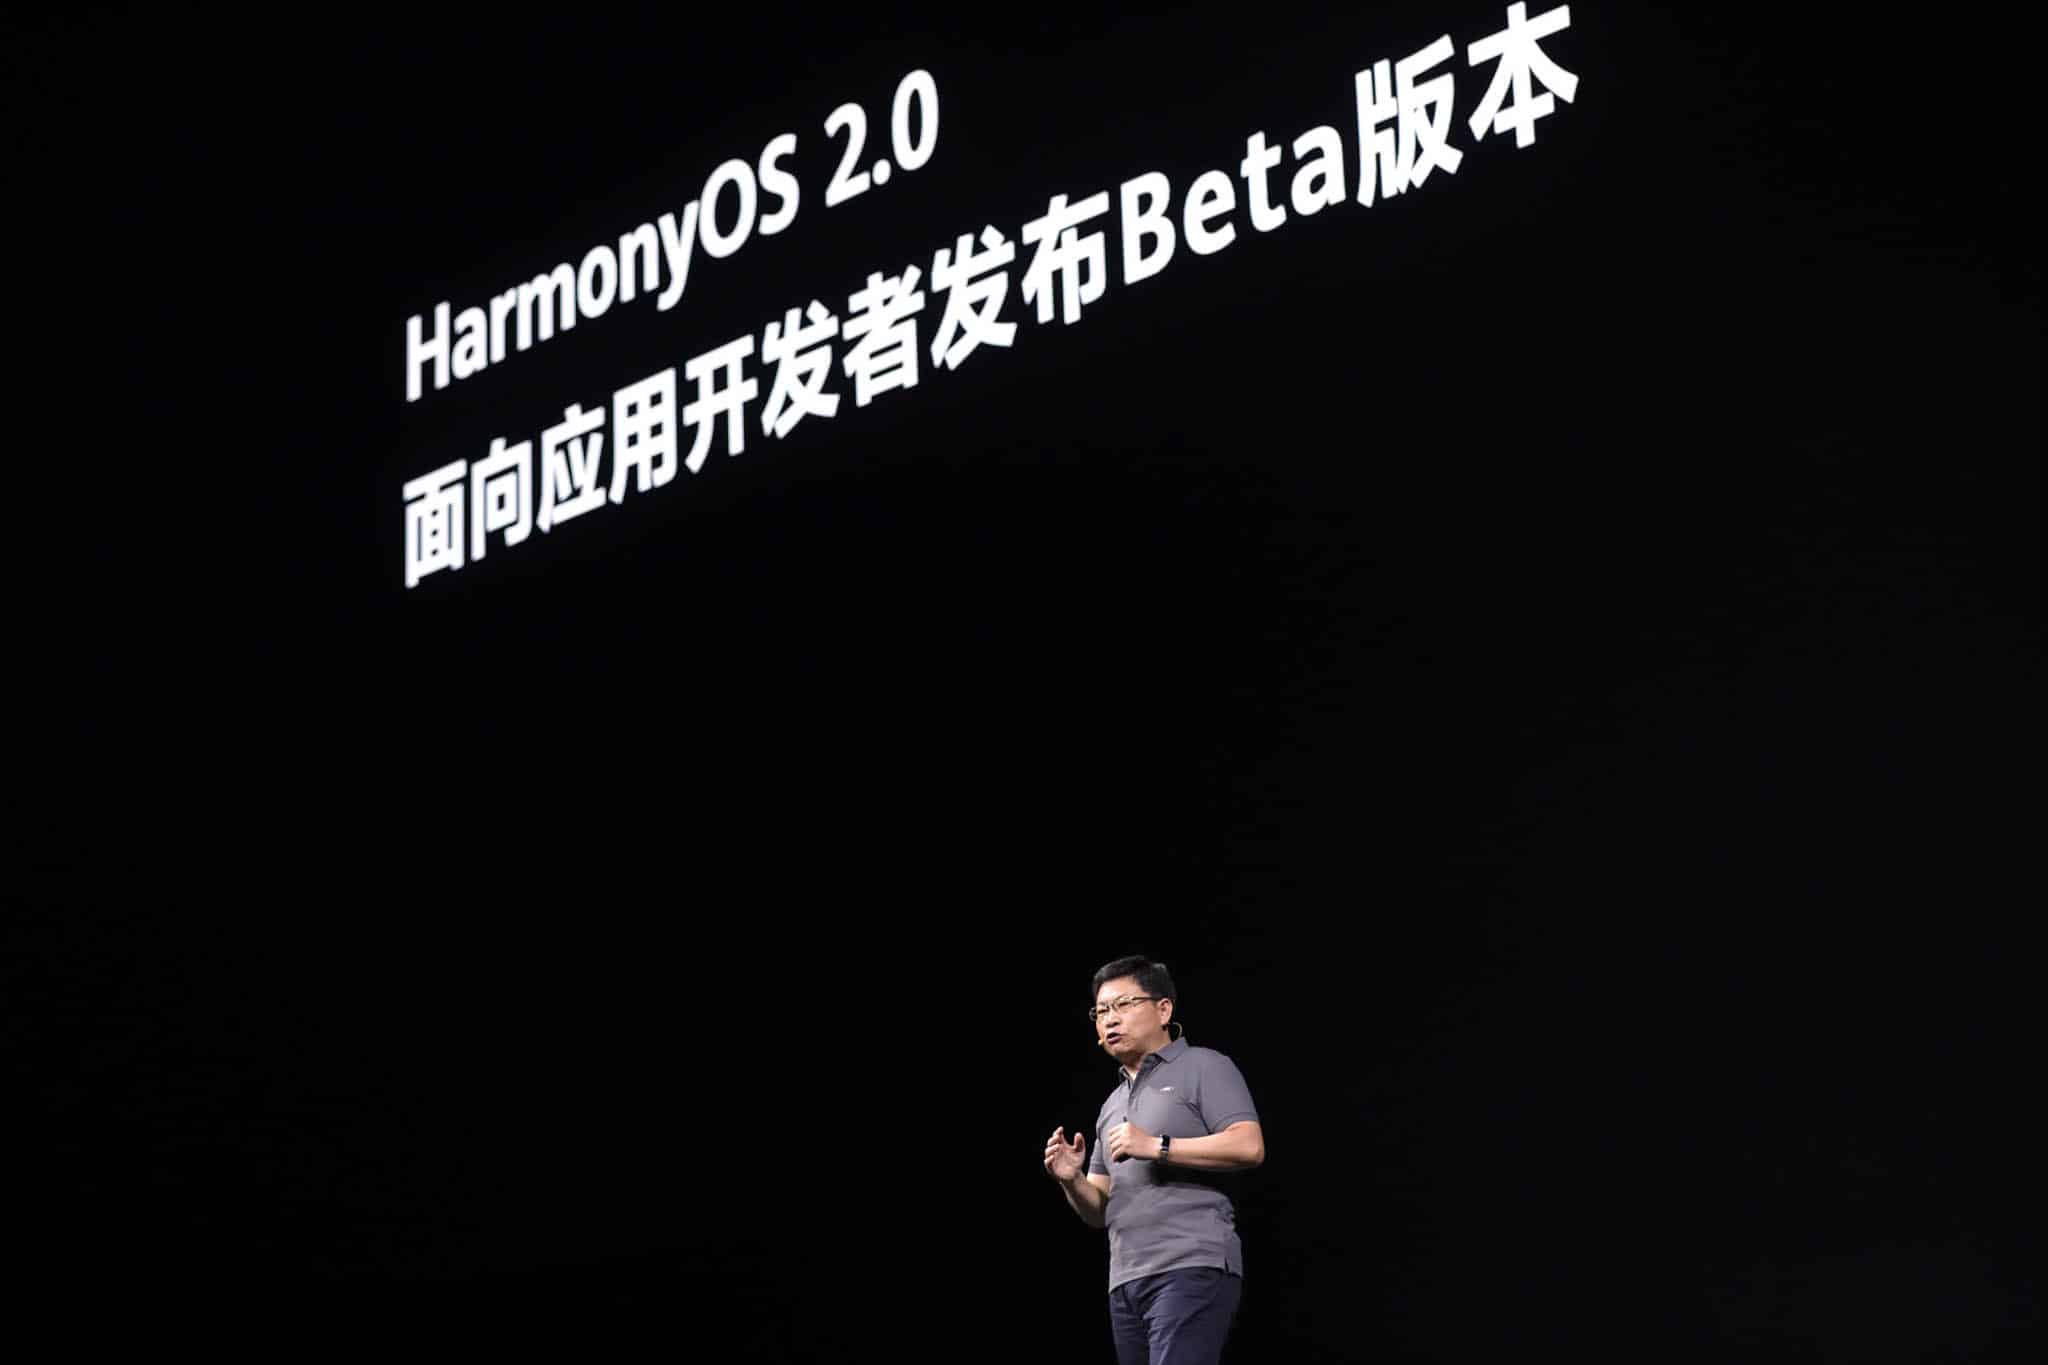 Huawei công bố công nghệ mới dành cho Nhà phát triển với khả năng mang lại trải nghiệm thông minh hơn cho mọi hoàn cảnh